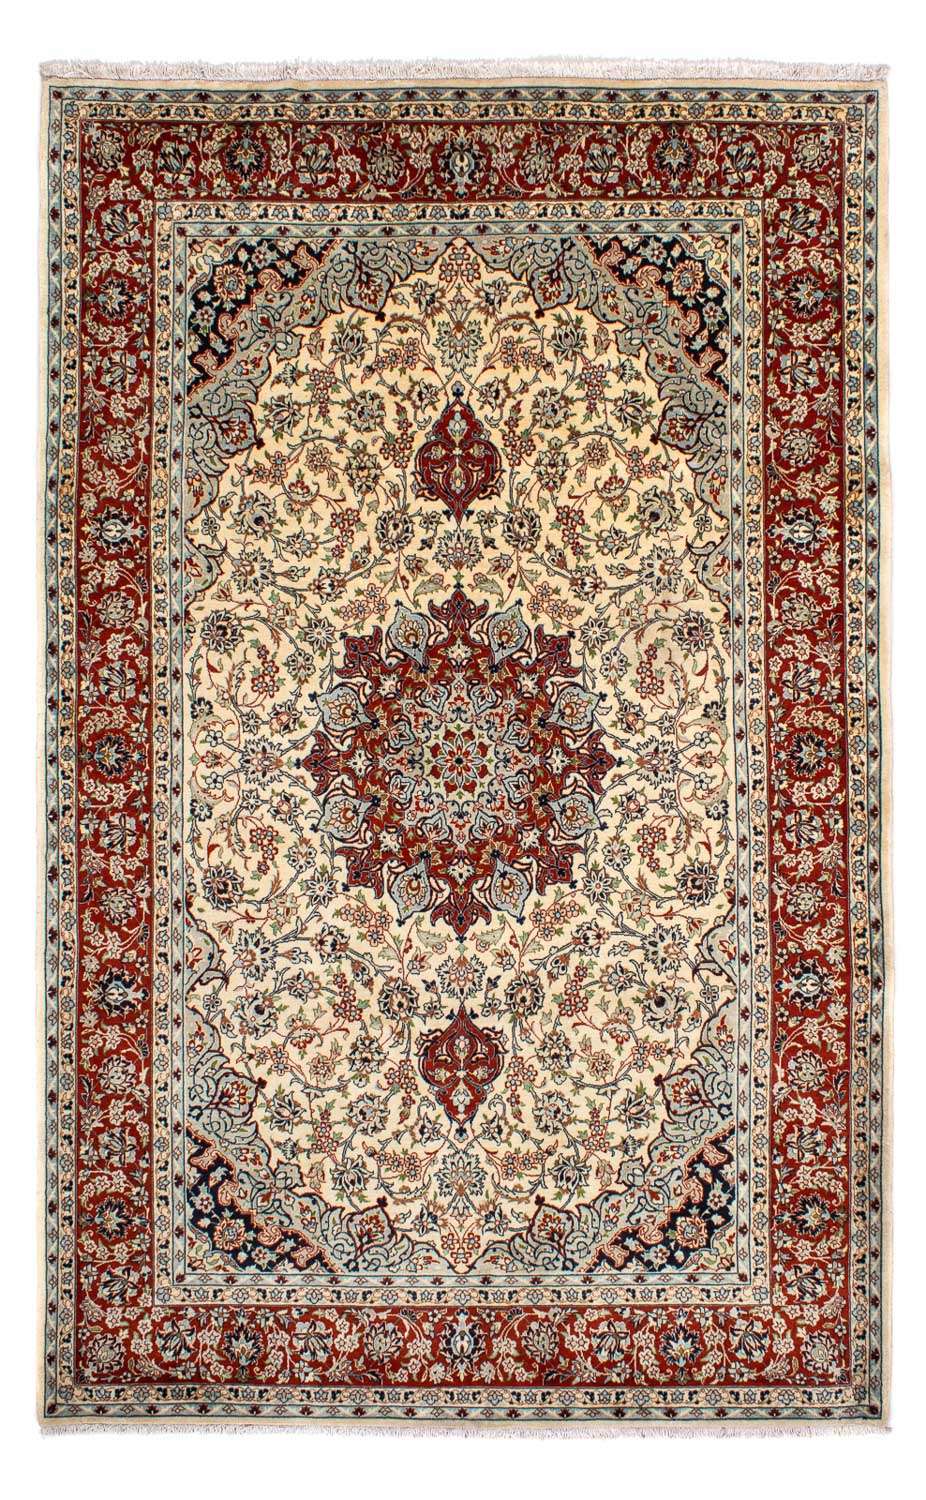 Tapis persan - Classique - 316 x 205 cm - beige